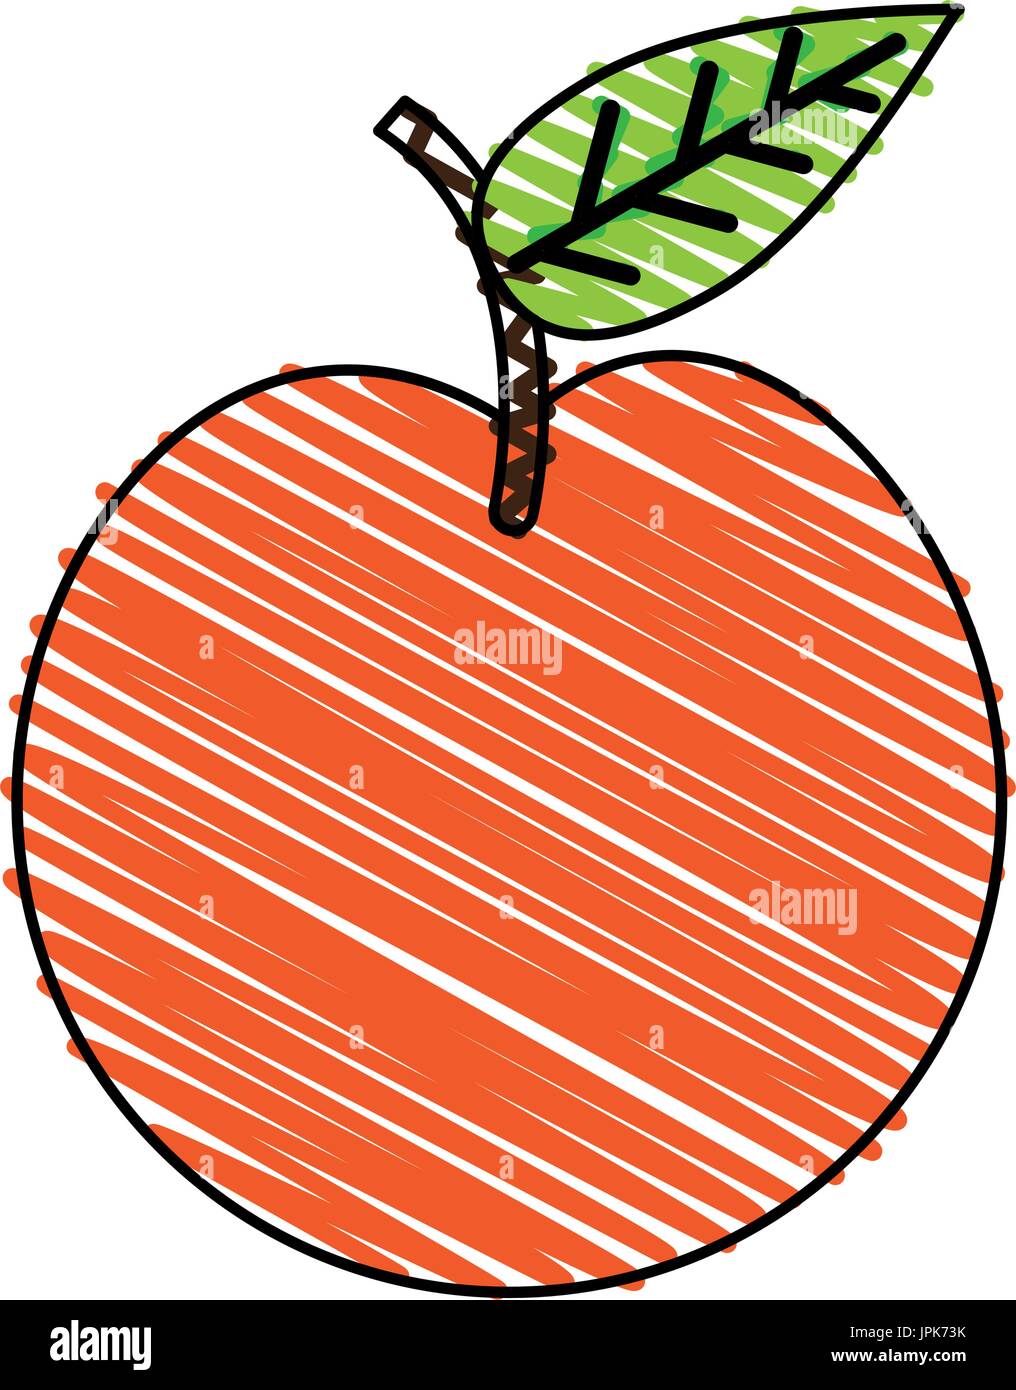 Tutta la frutta apple icon image Illustrazione Vettoriale